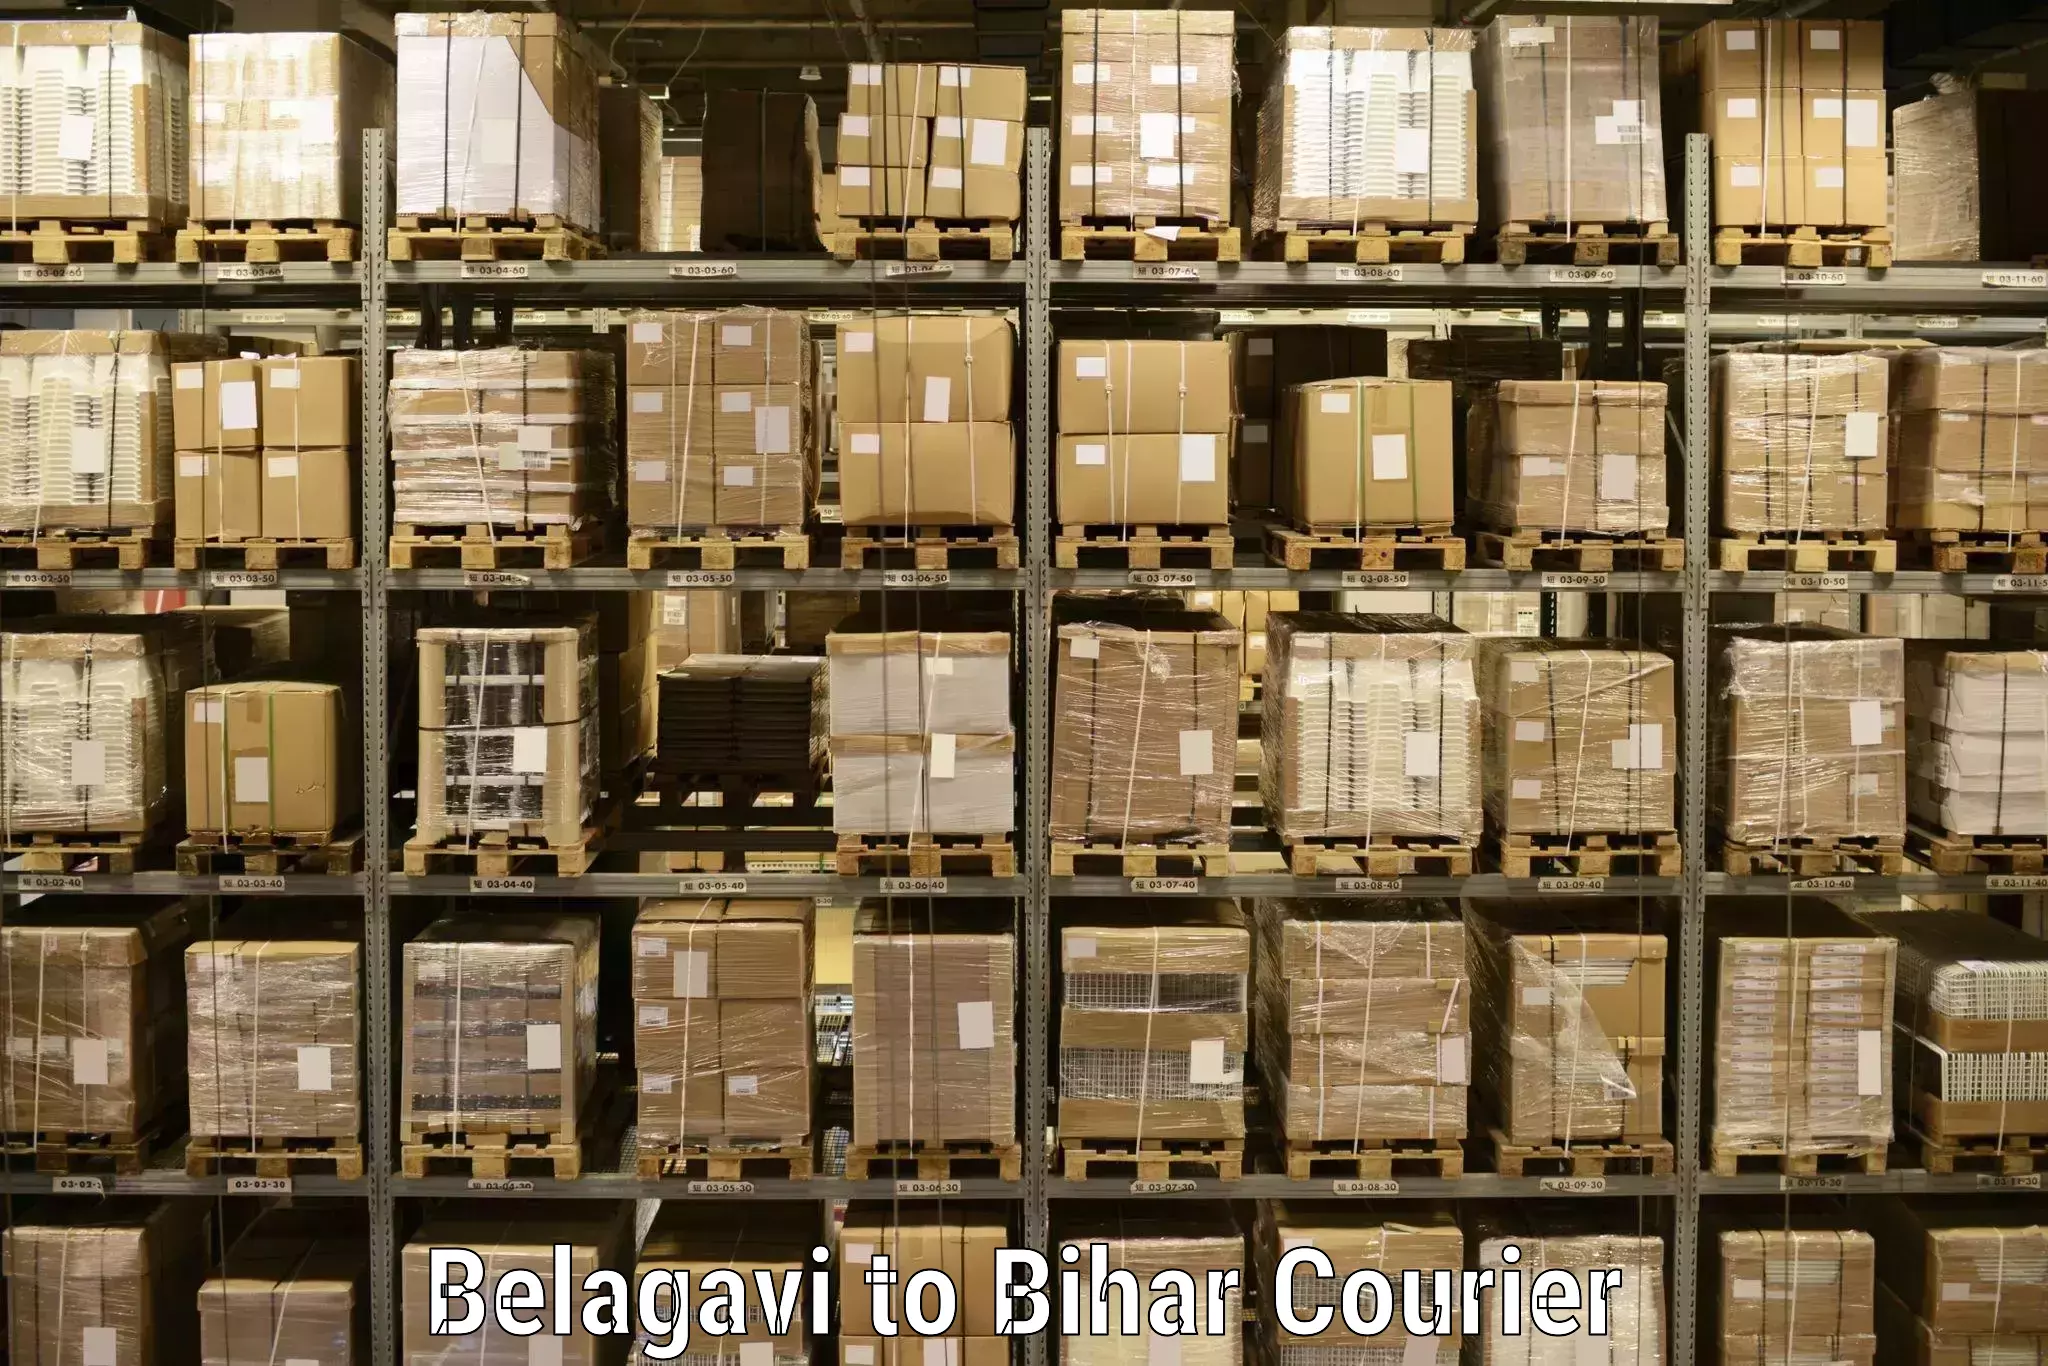 Global courier networks Belagavi to Deo Aurangabad